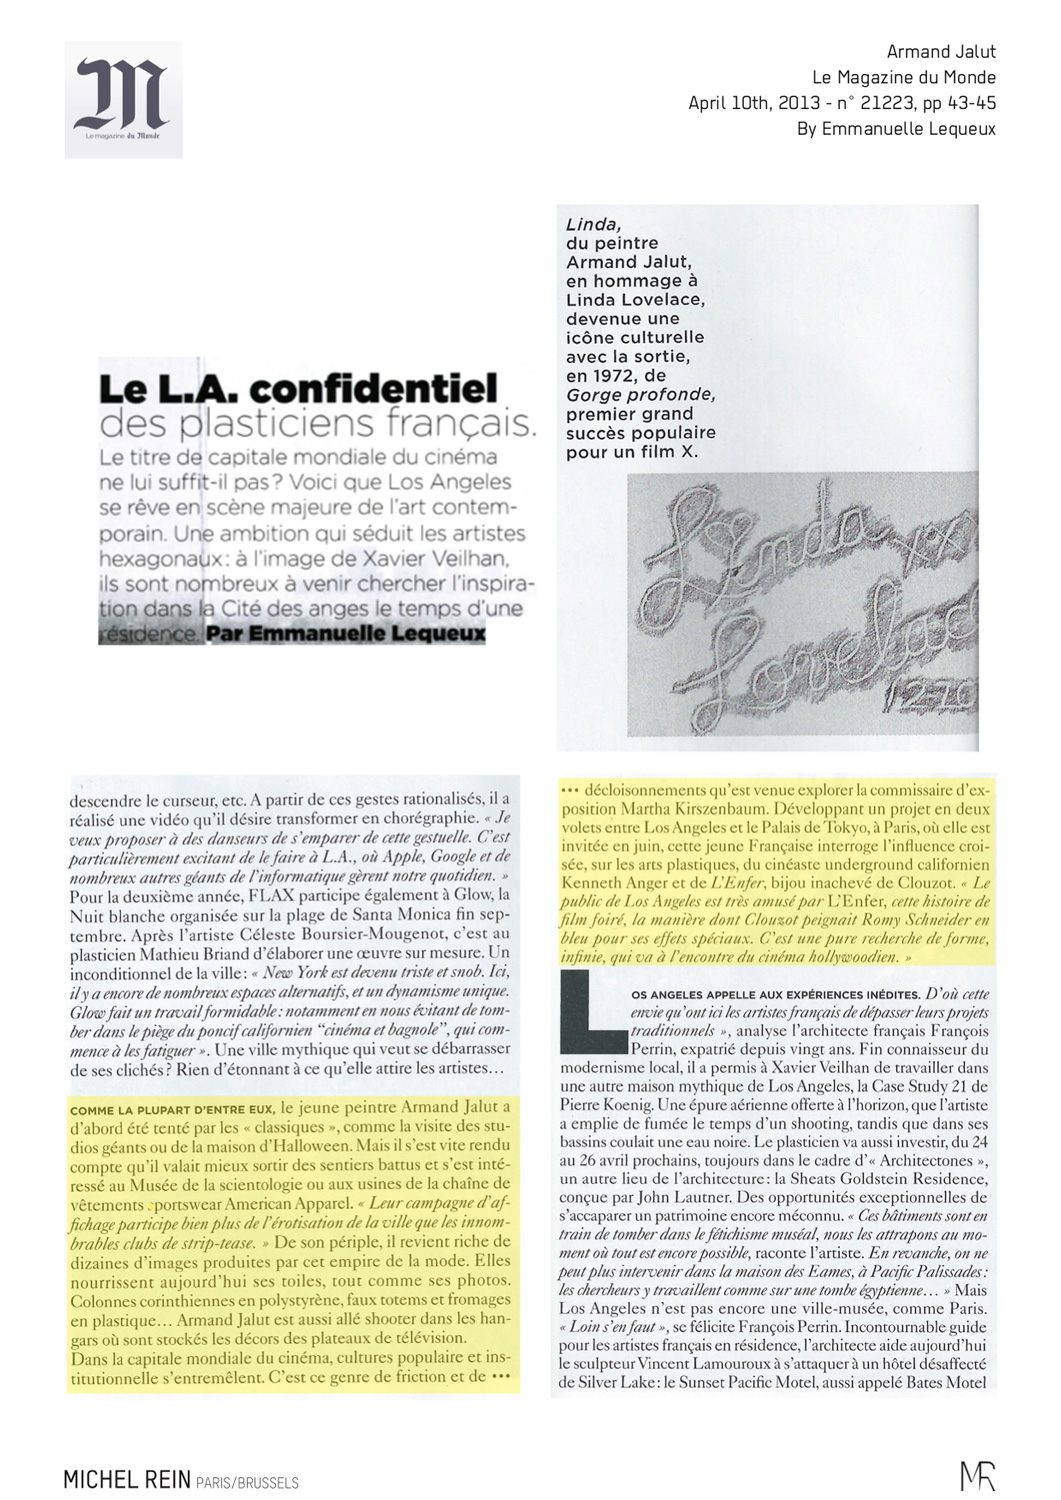 Le L.A. confidentiel des plasticiens français - Le Magazine du Monde